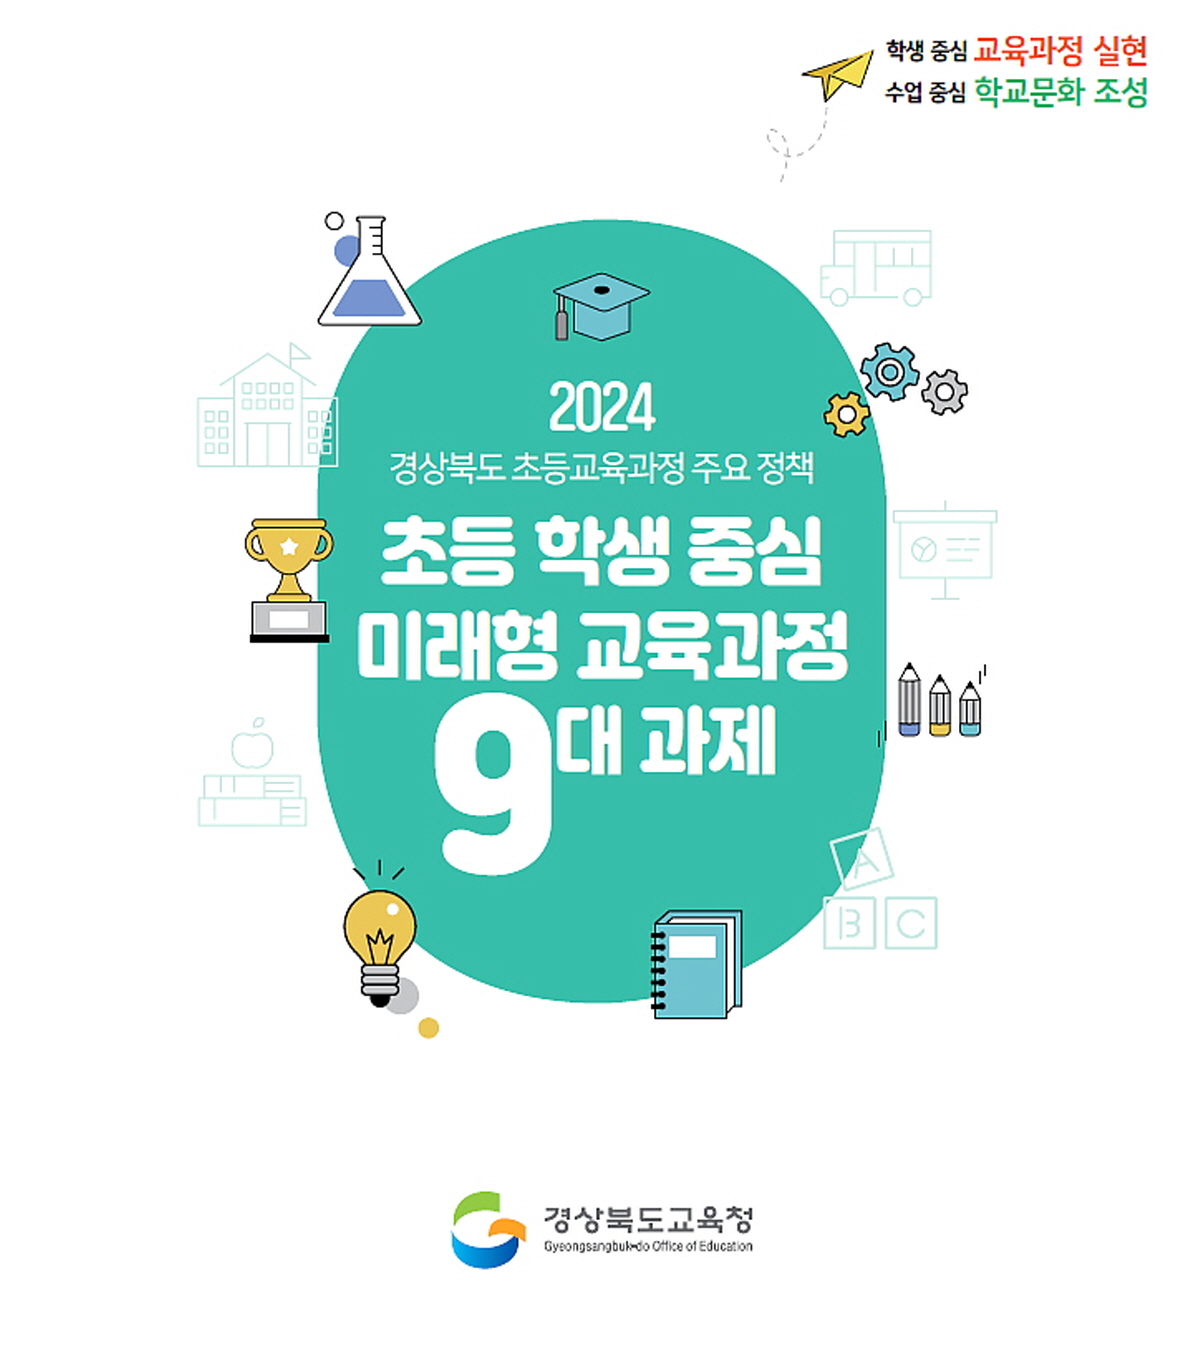 경북교육청, 2024학년도 초등 교육 과정 3대 전략 9대 과제 추진